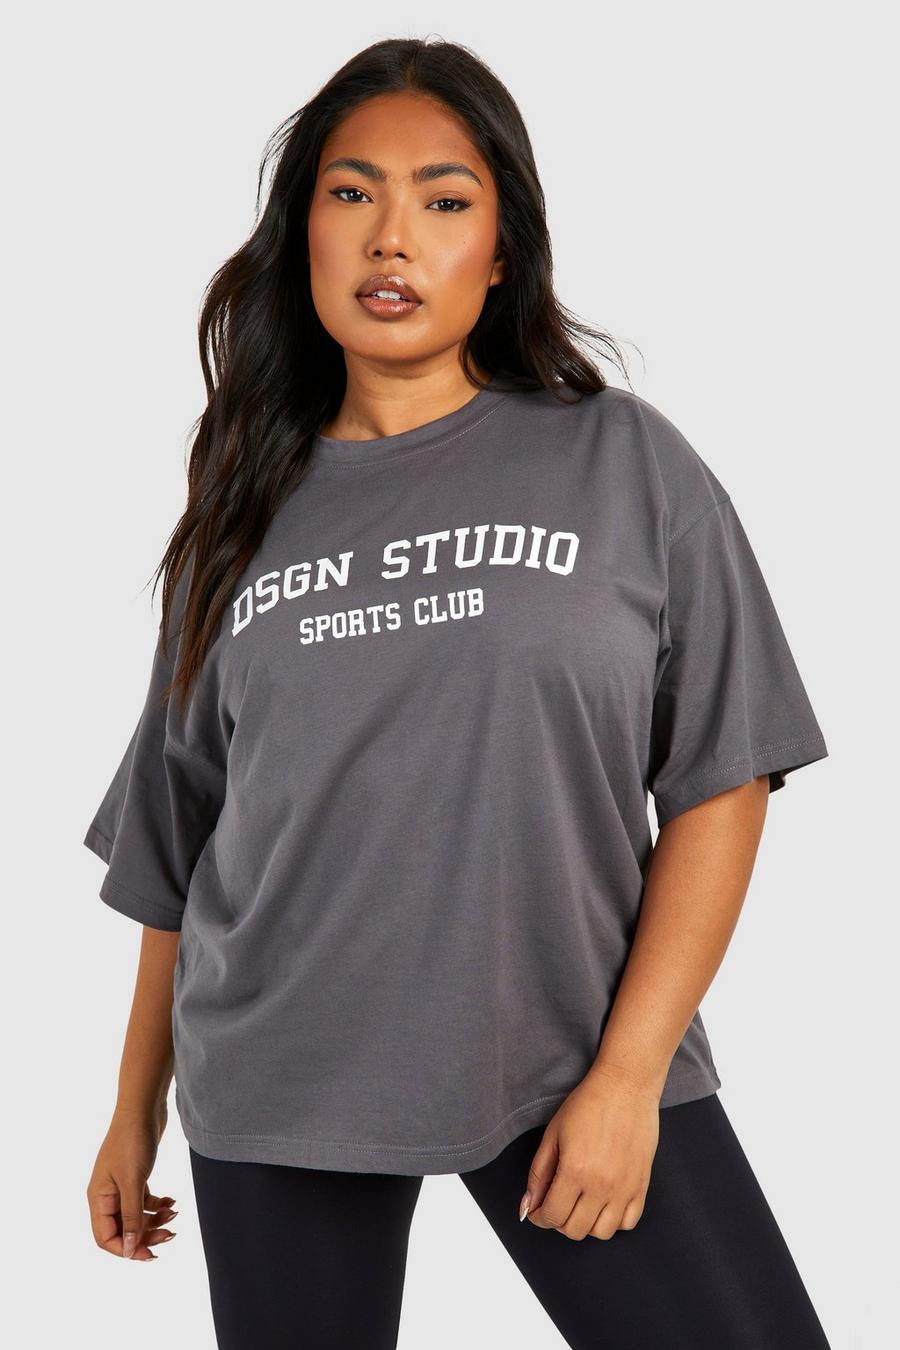 Plus Oversize T-Shirt mit Dsgn Studio Sports Club Print, Charcoal